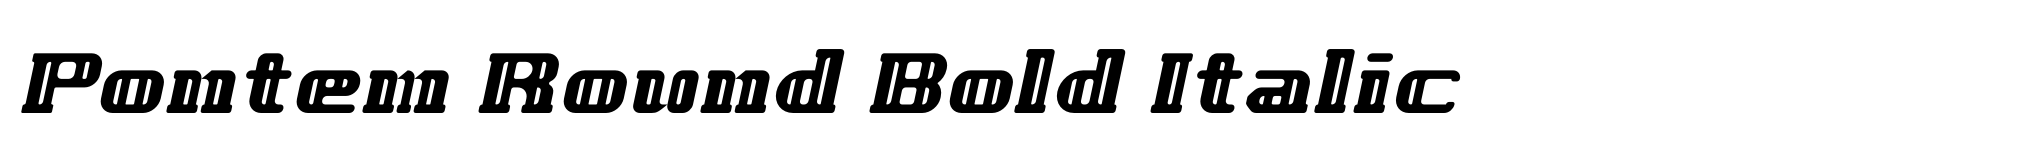 Pontem Round Bold Italic image